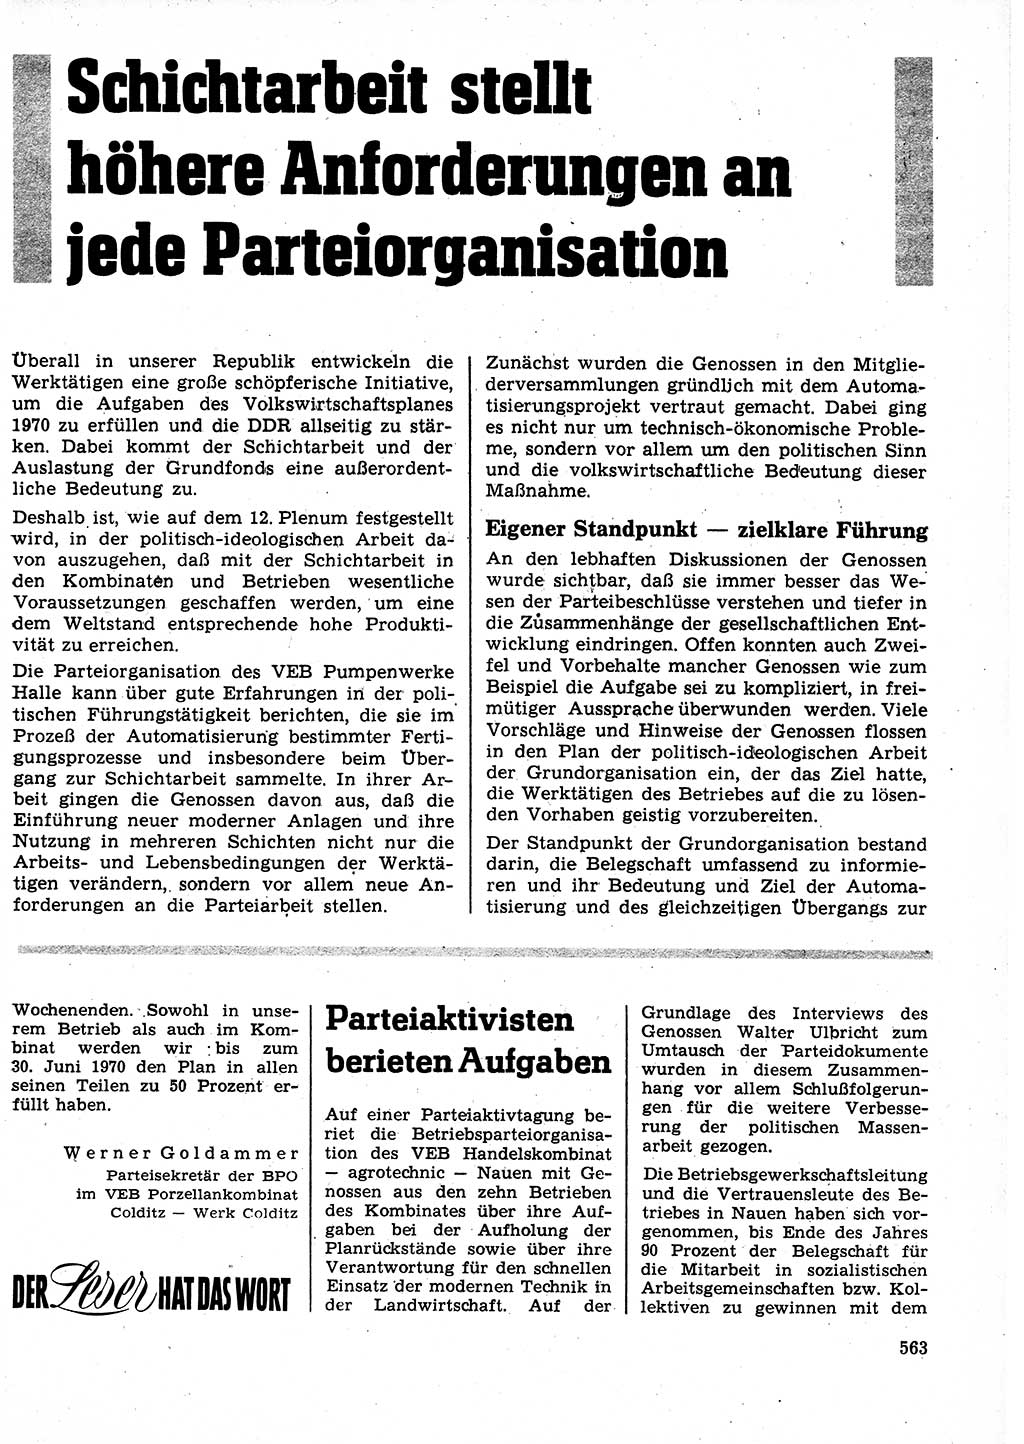 Neuer Weg (NW), Organ des Zentralkomitees (ZK) der SED (Sozialistische Einheitspartei Deutschlands) für Fragen des Parteilebens, 25. Jahrgang [Deutsche Demokratische Republik (DDR)] 1970, Seite 563 (NW ZK SED DDR 1970, S. 563)